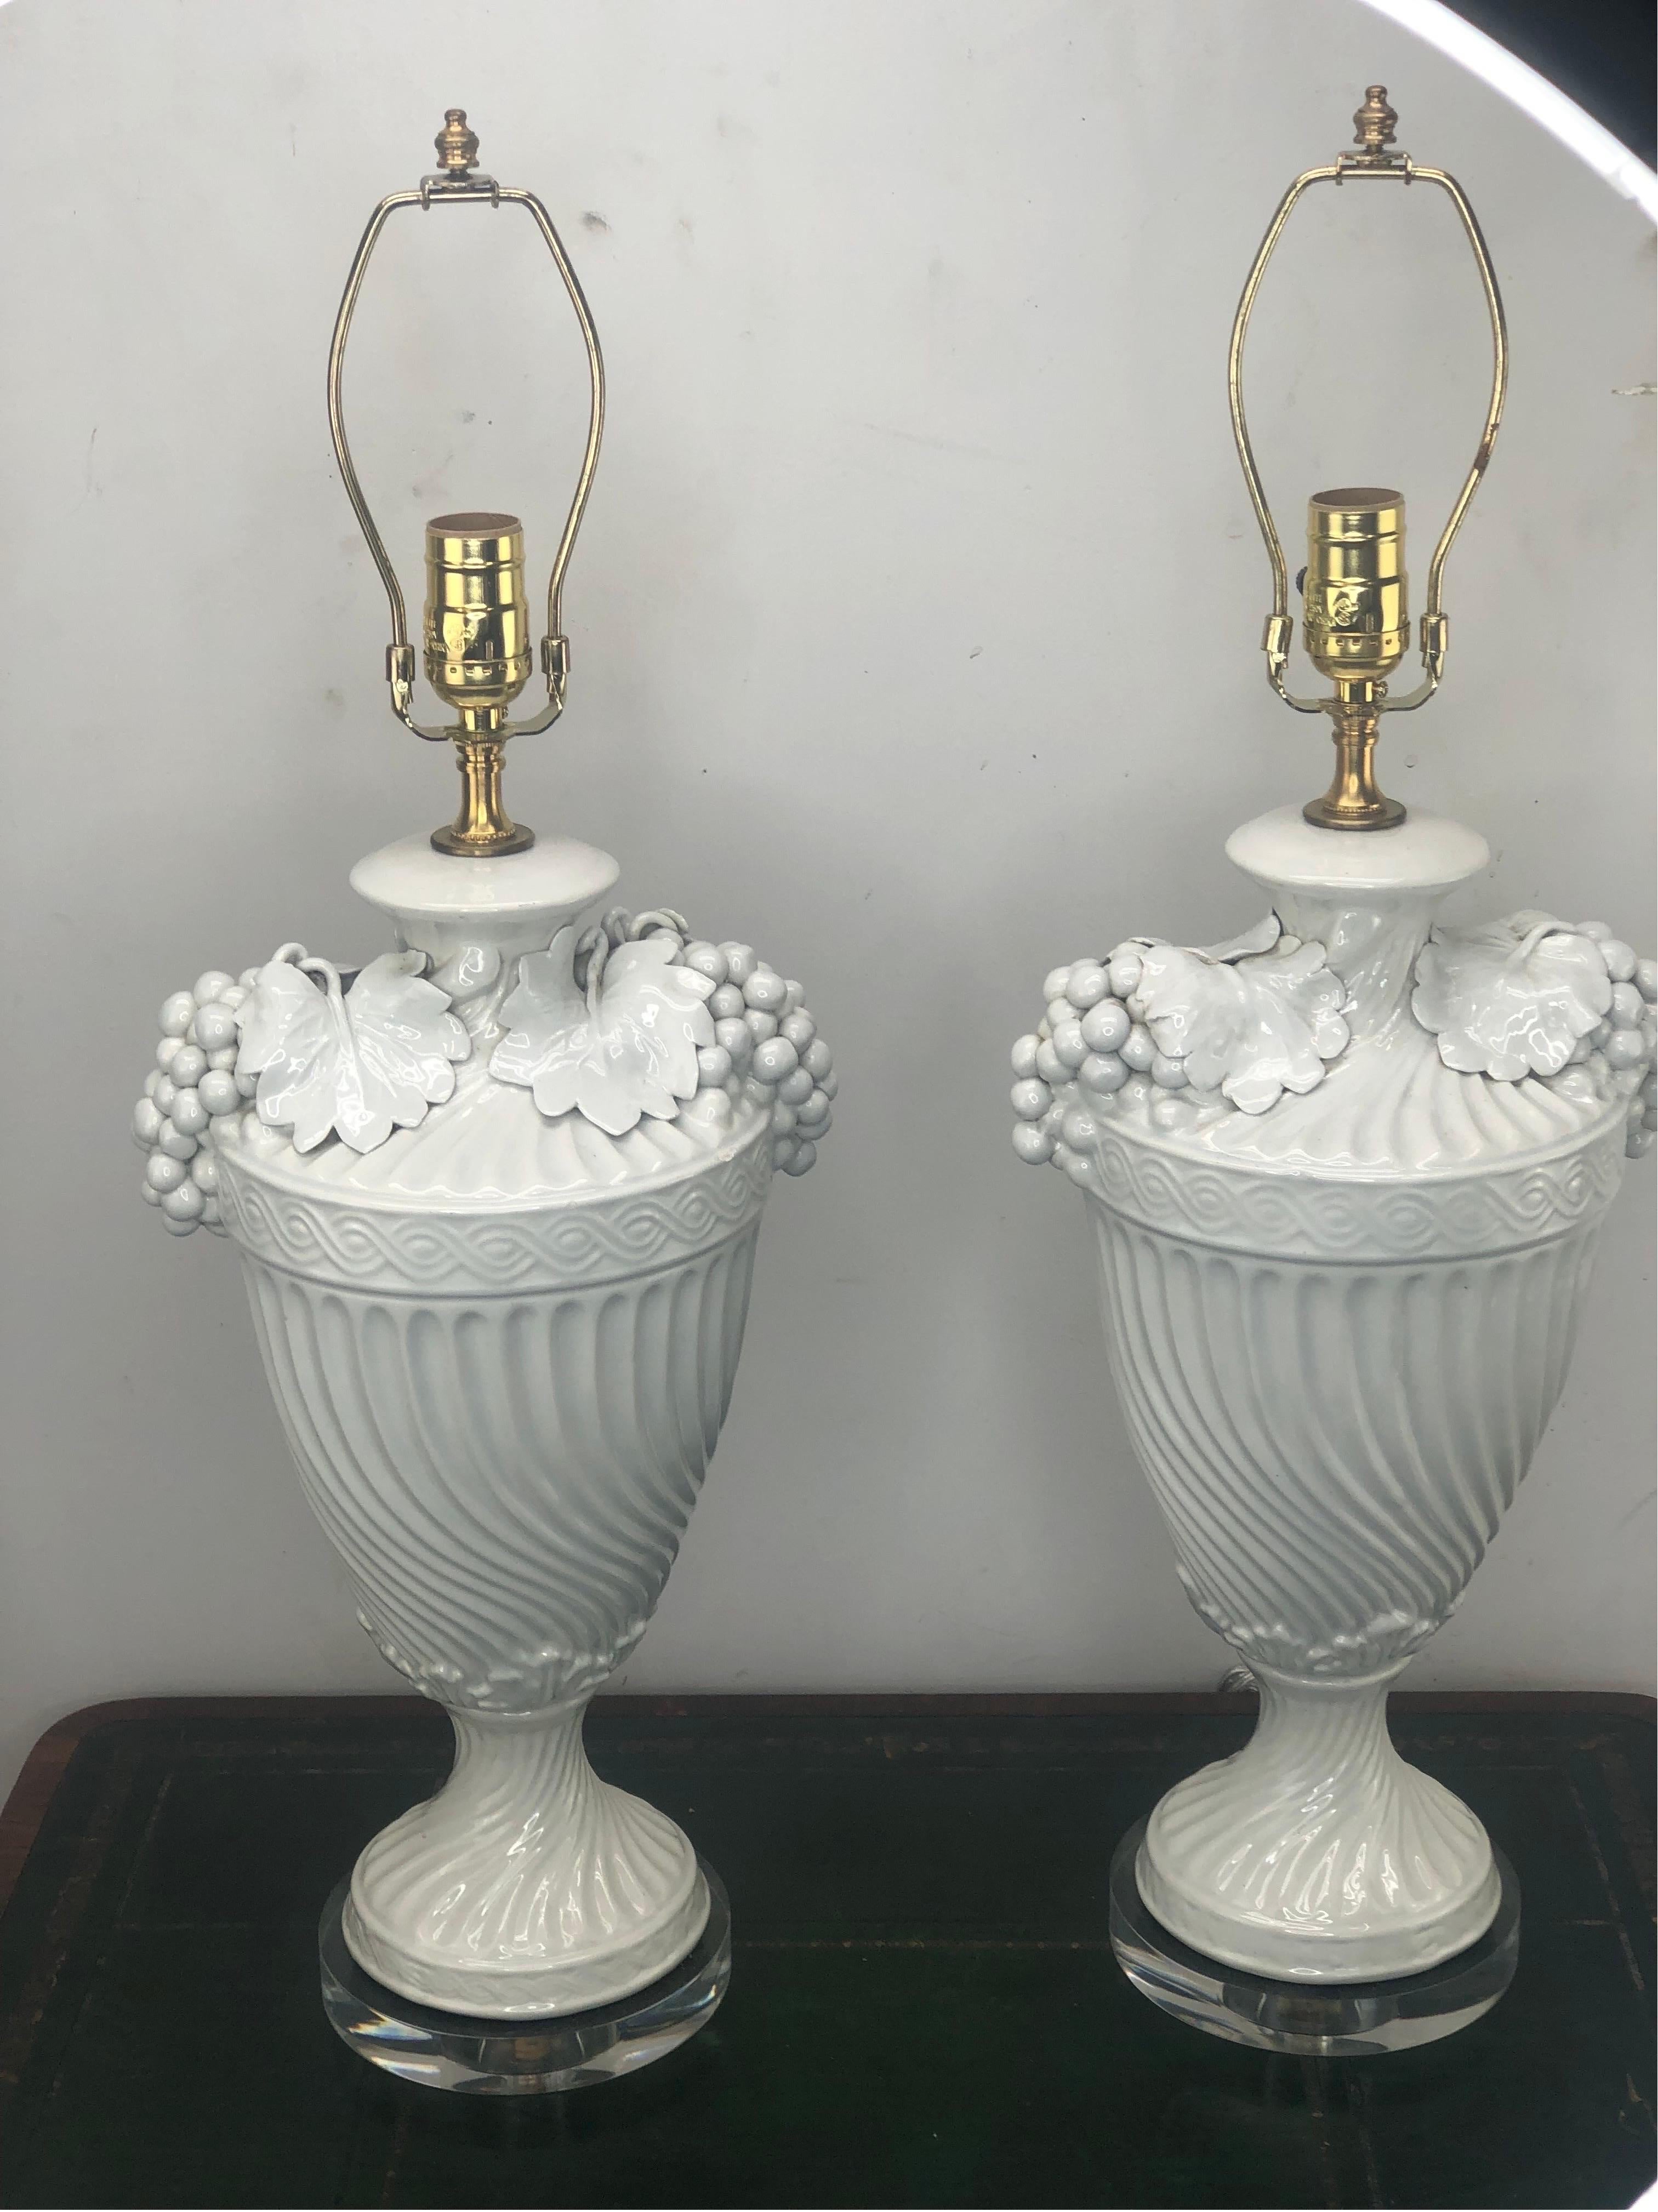 Ein Paar italienische Urnenlampen aus glasierter Keramik mit Weintrauben, montiert auf Lucit-Sockeln. Neu verkabelt mit 3-fach Steckdose.